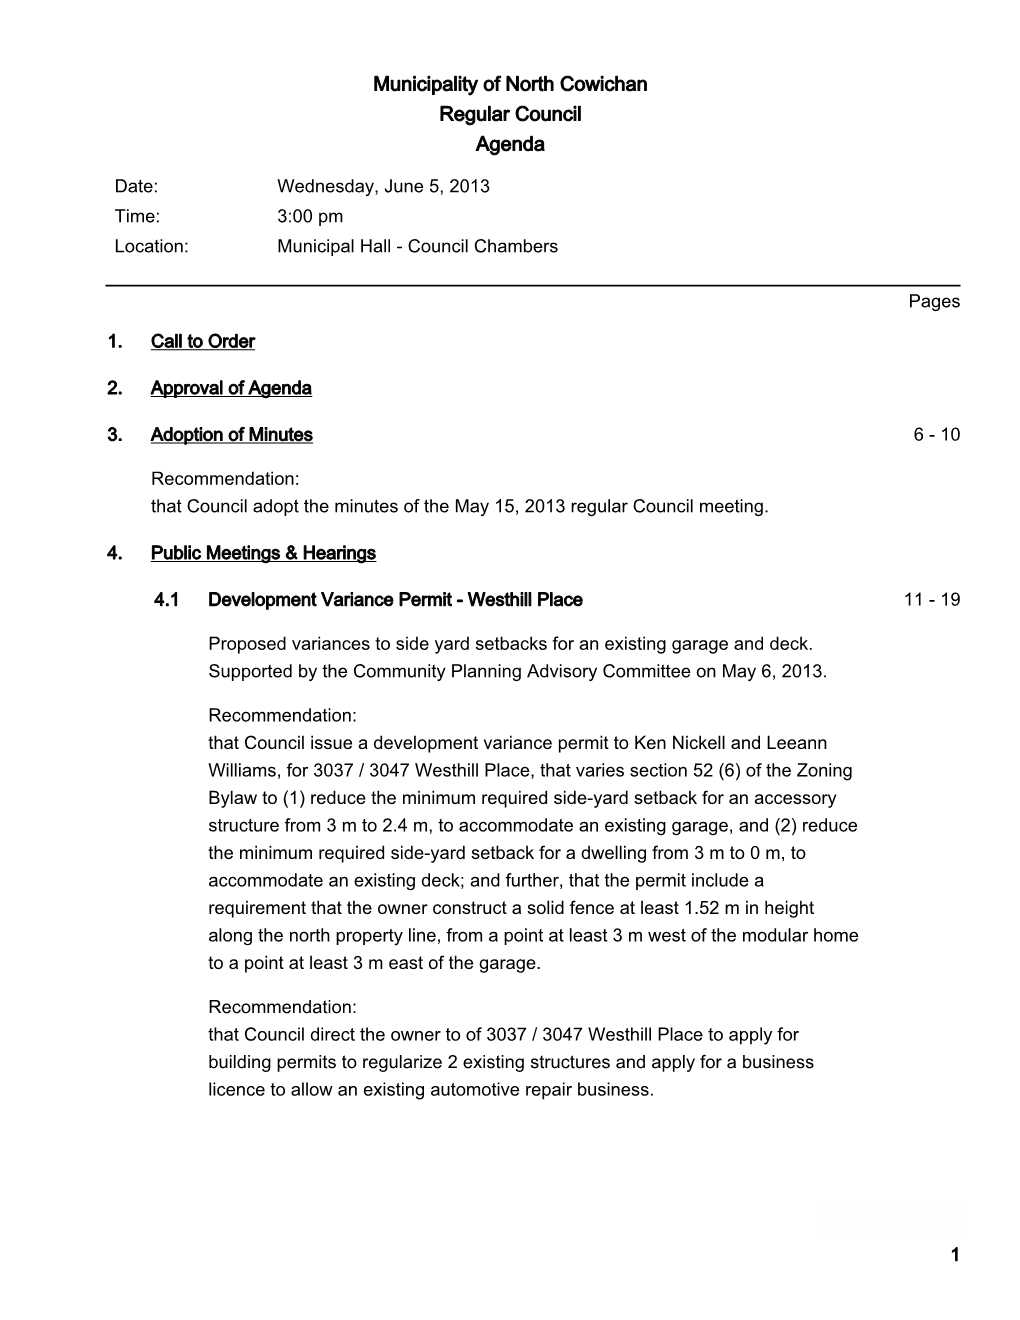 Municipality of North Cowichan Regular Council Agenda